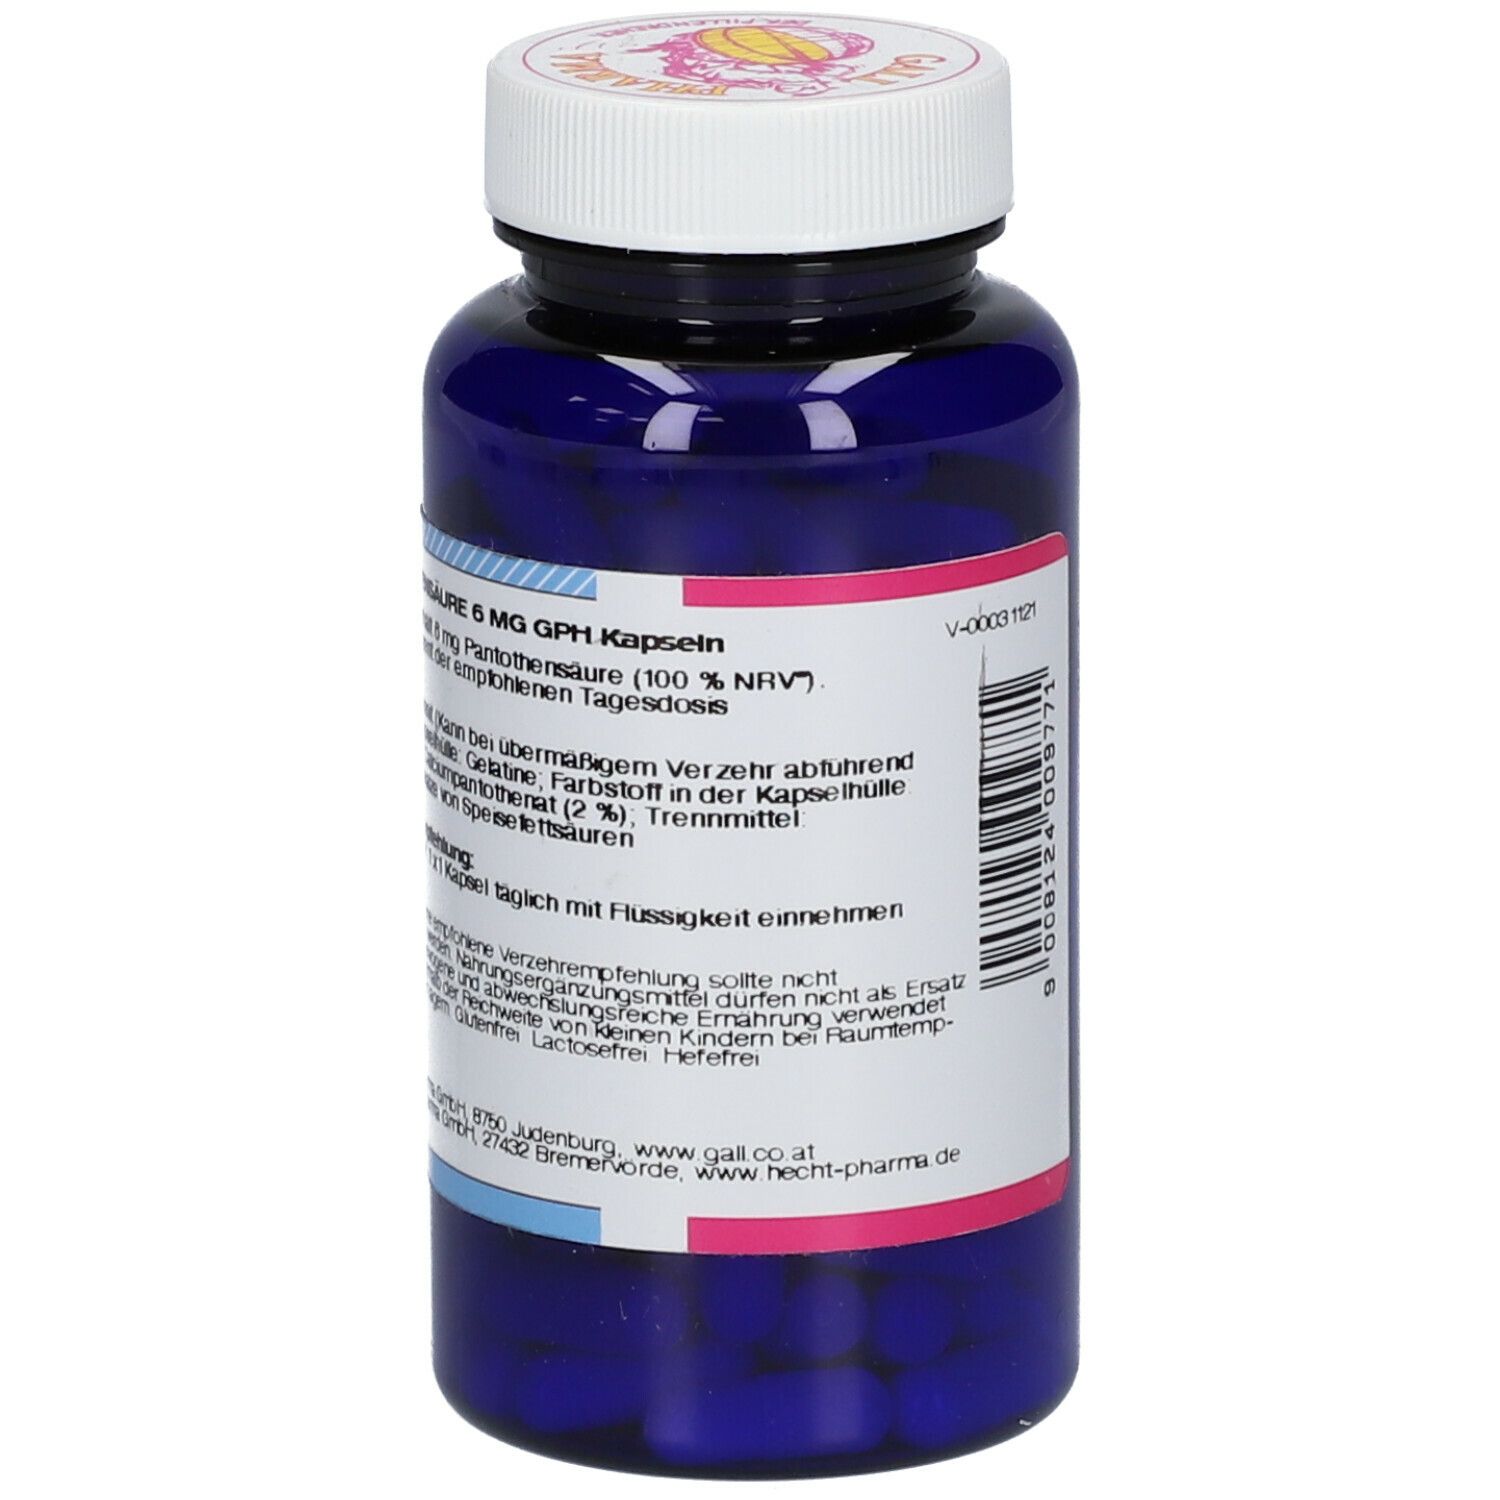 GALL PHARMA Pantothensäure 6 mg GPH Kapseln